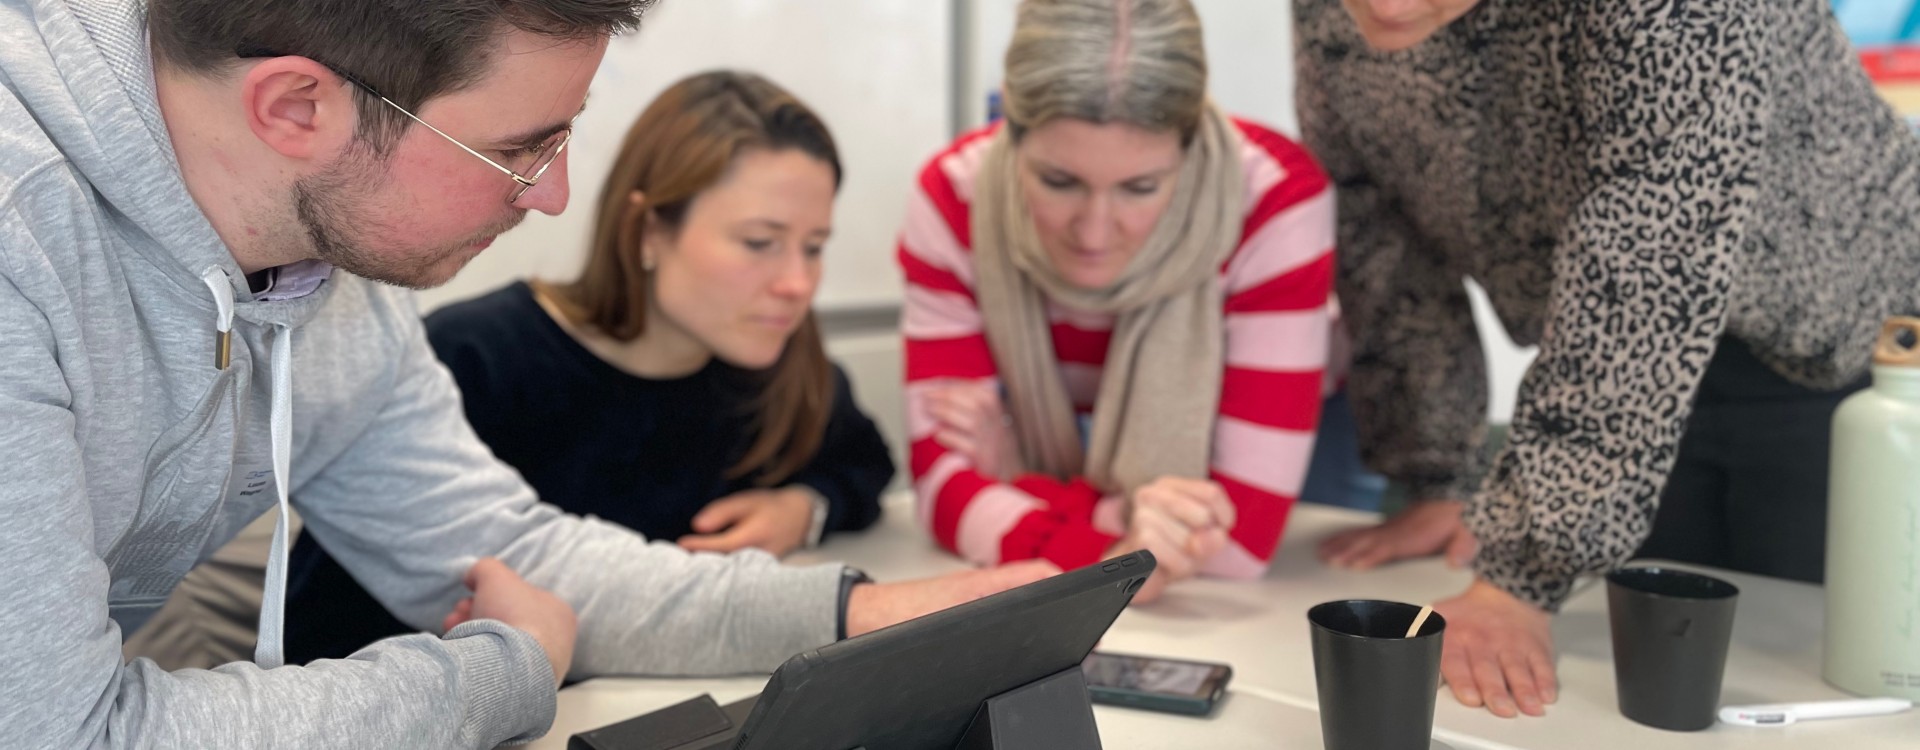 Vier Lehrkräfte blicken während einer Arbeitsphase gemeinsam auf ein Smartphone.